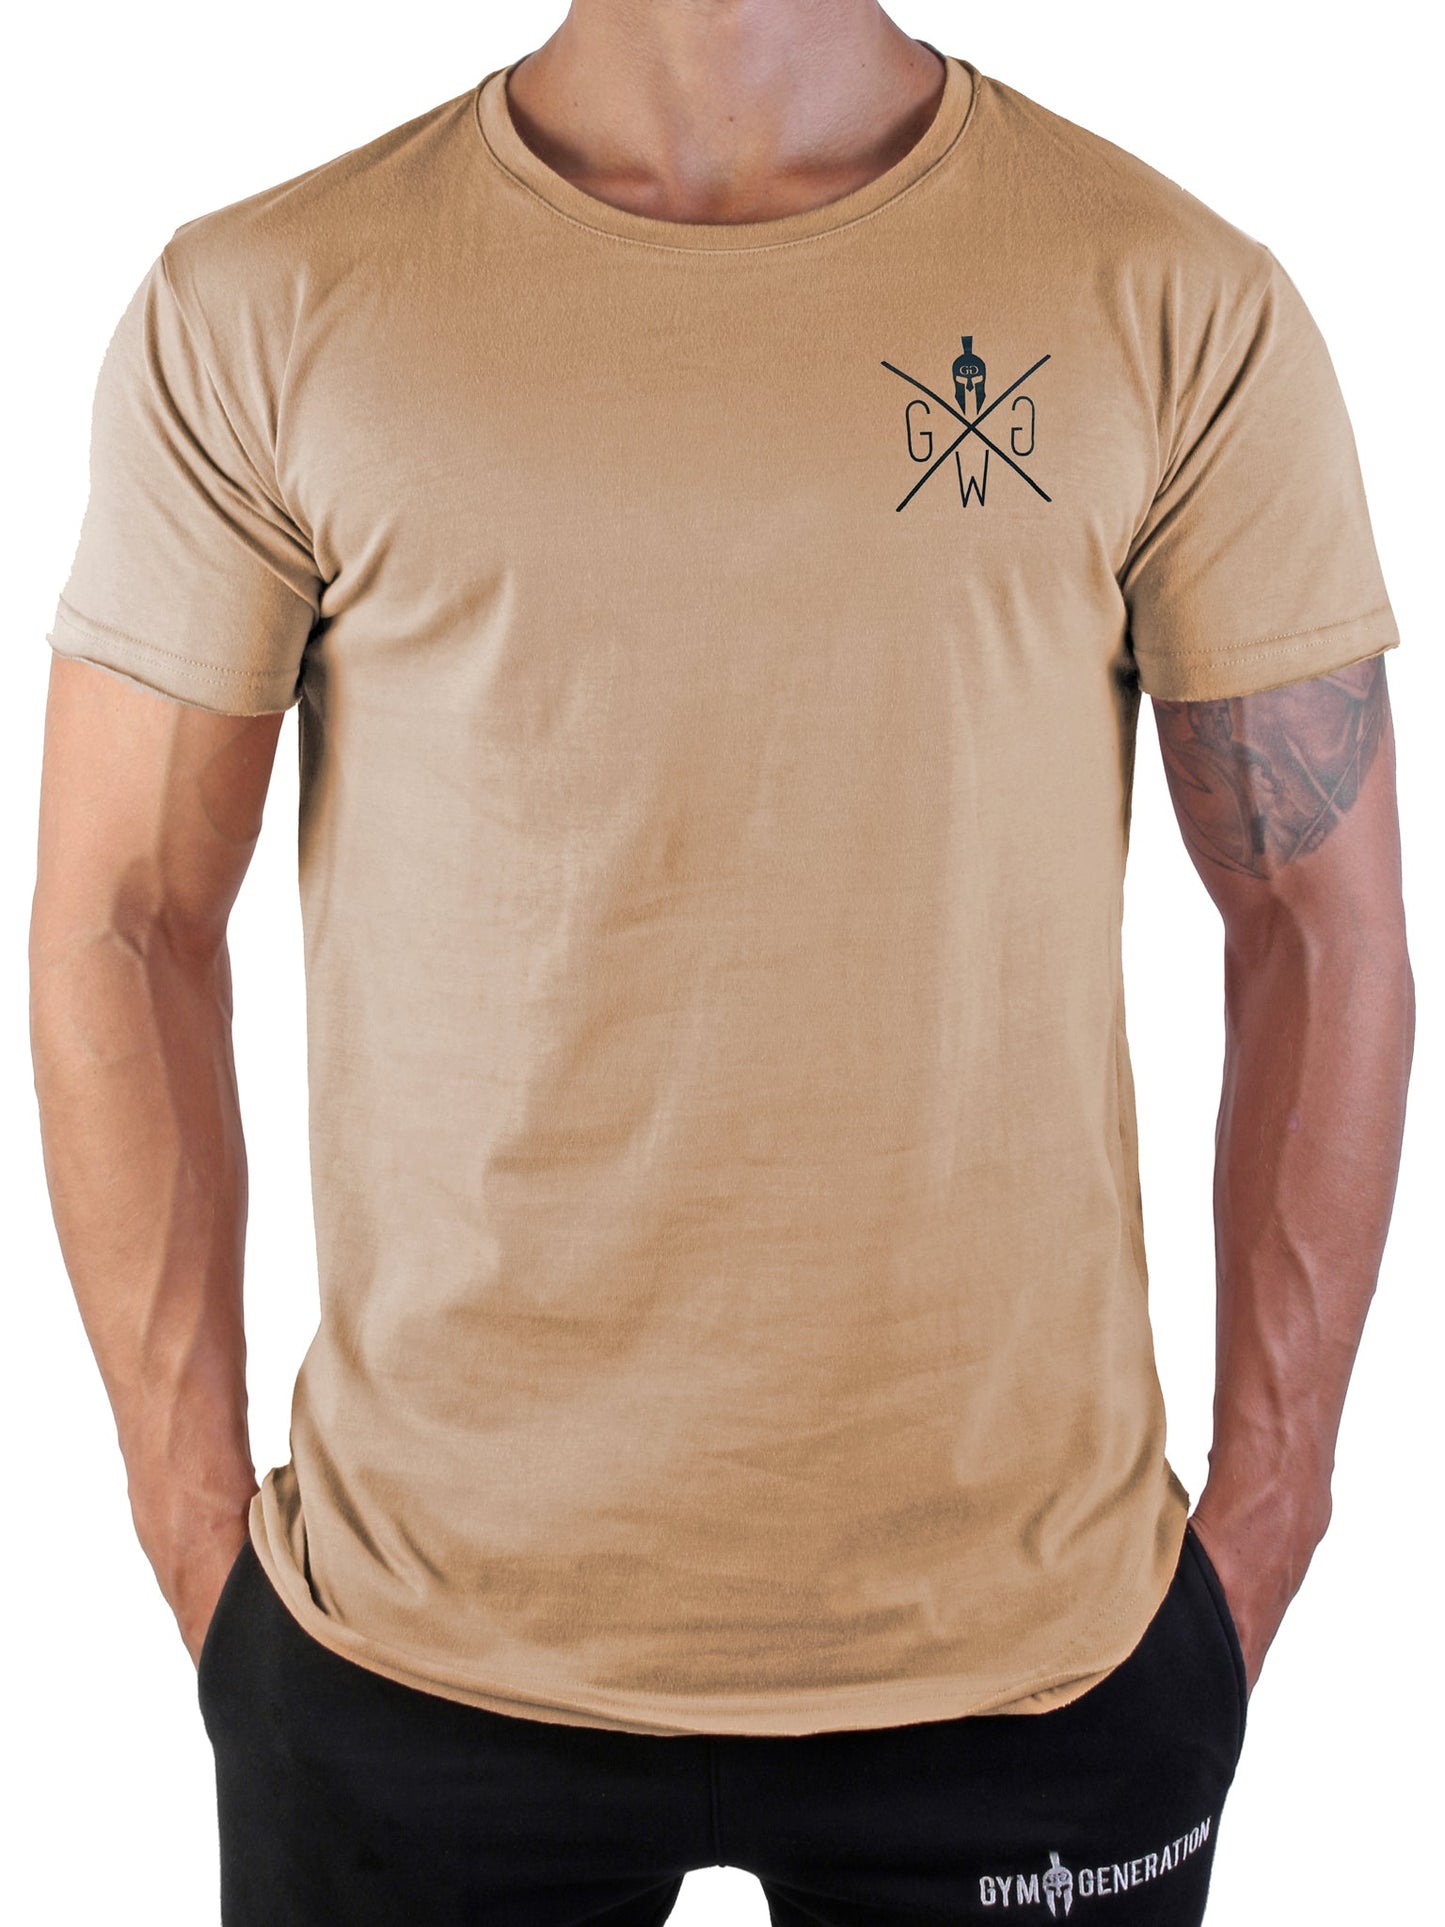 Urban Warrior T-Shirt - Off White - Gym Generation®--www.gymgeneration.ch